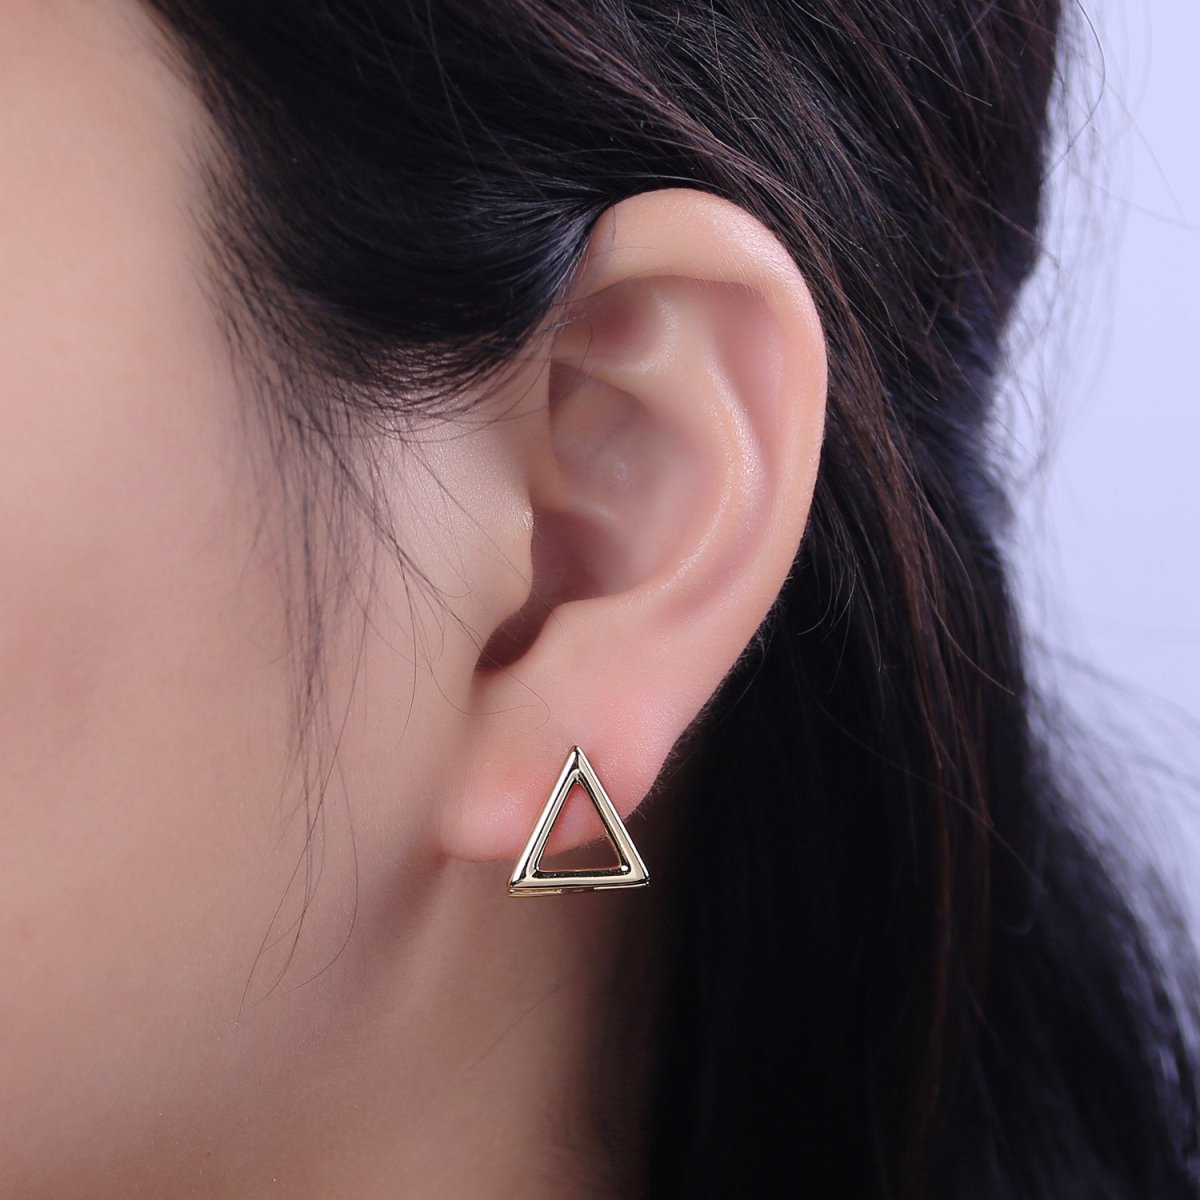 Triangle Hoop EarringLever backs Earring Modern Hoop Earring Minimalist Jewelry 14k Gold Filled hypoallergenic earrings T-294 - DLUXCA